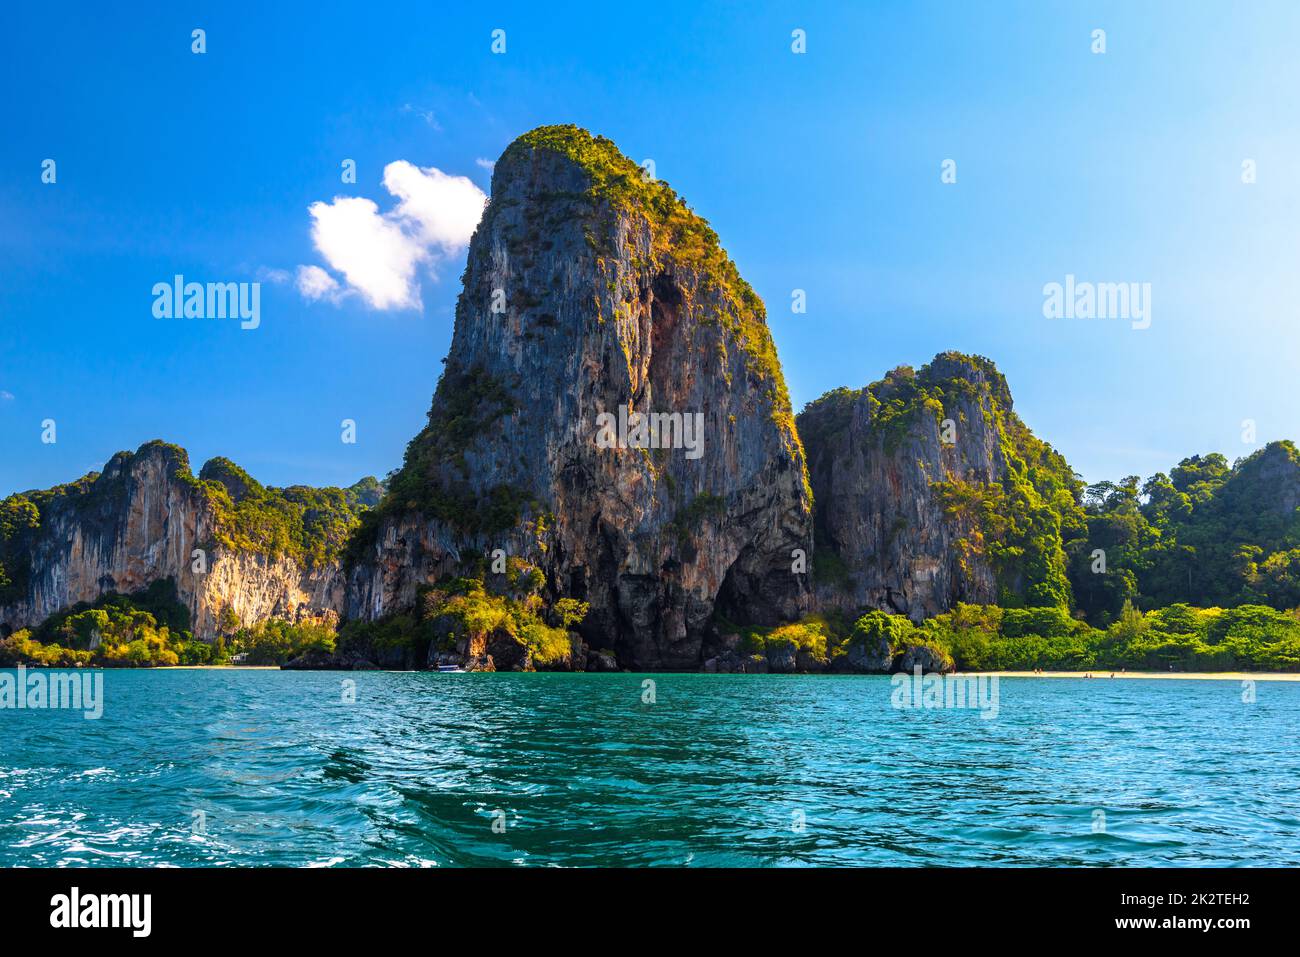 Montagnes Rocheuses dans l'eau, plage de Railay, Ao Nang, Krabi, Thail Banque D'Images